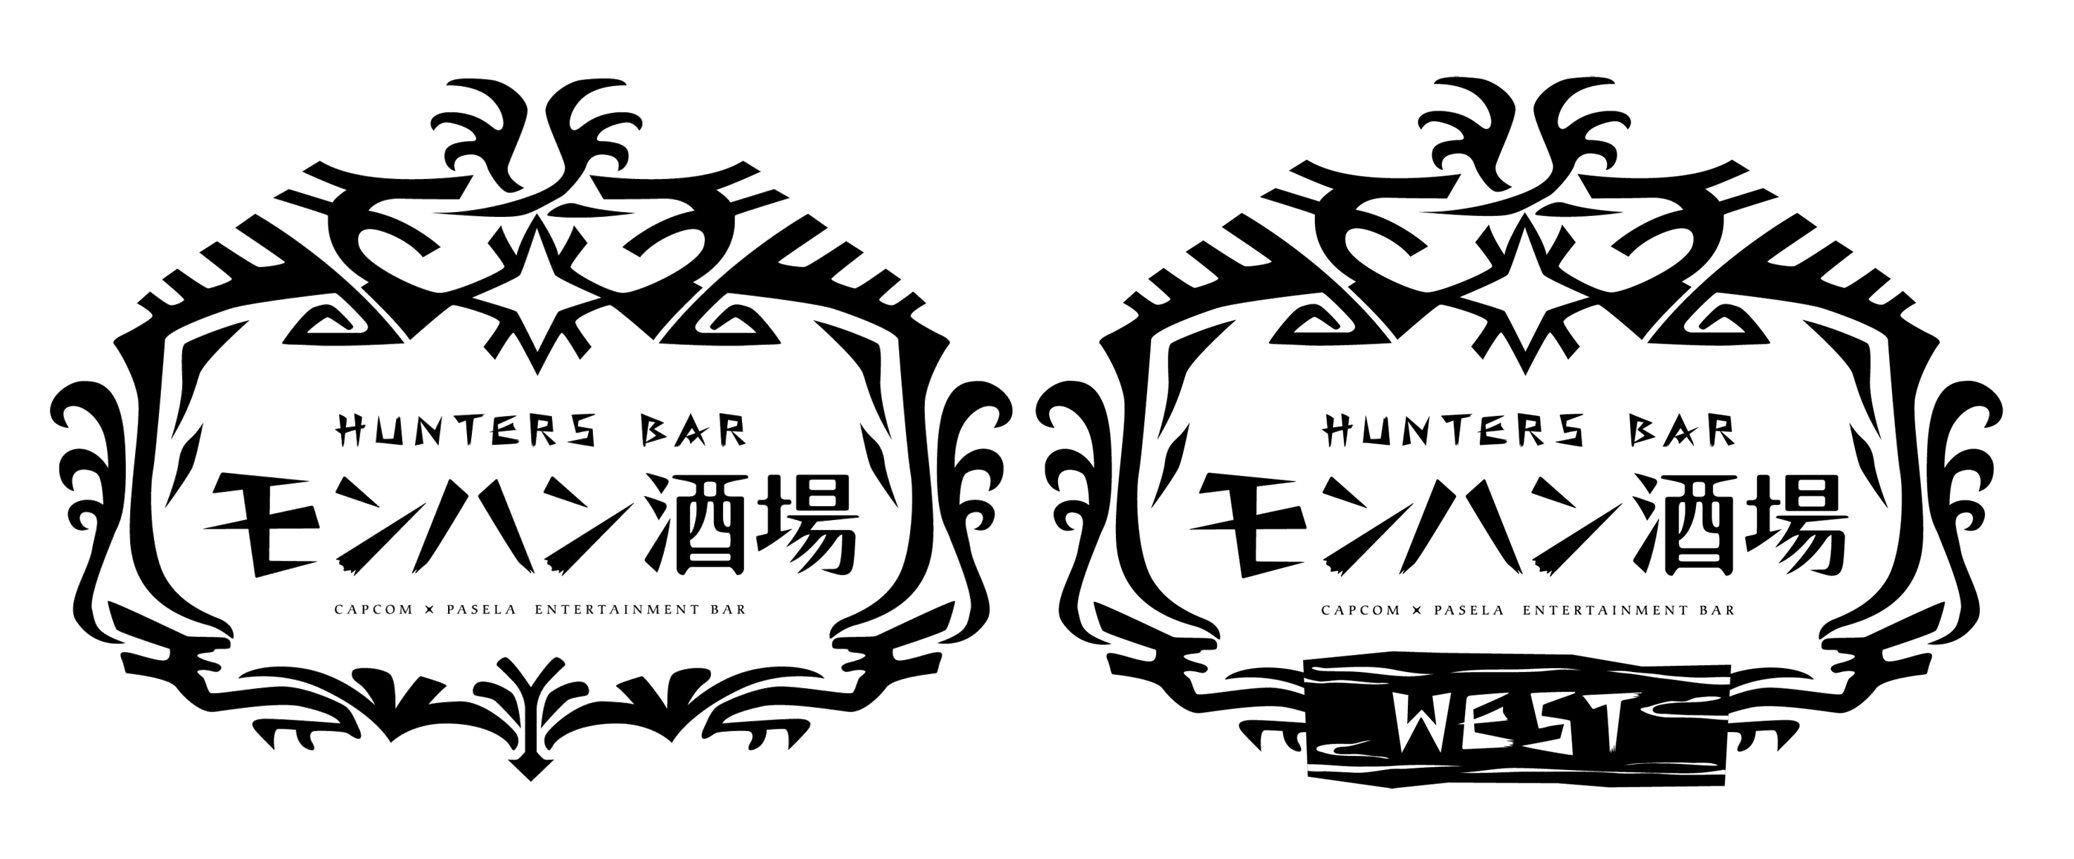 モンハン酒場 モンハン酒場 West において モンスターハンターワールド アイスボーン コラボ決定 株式会社カプコンのプレスリリース